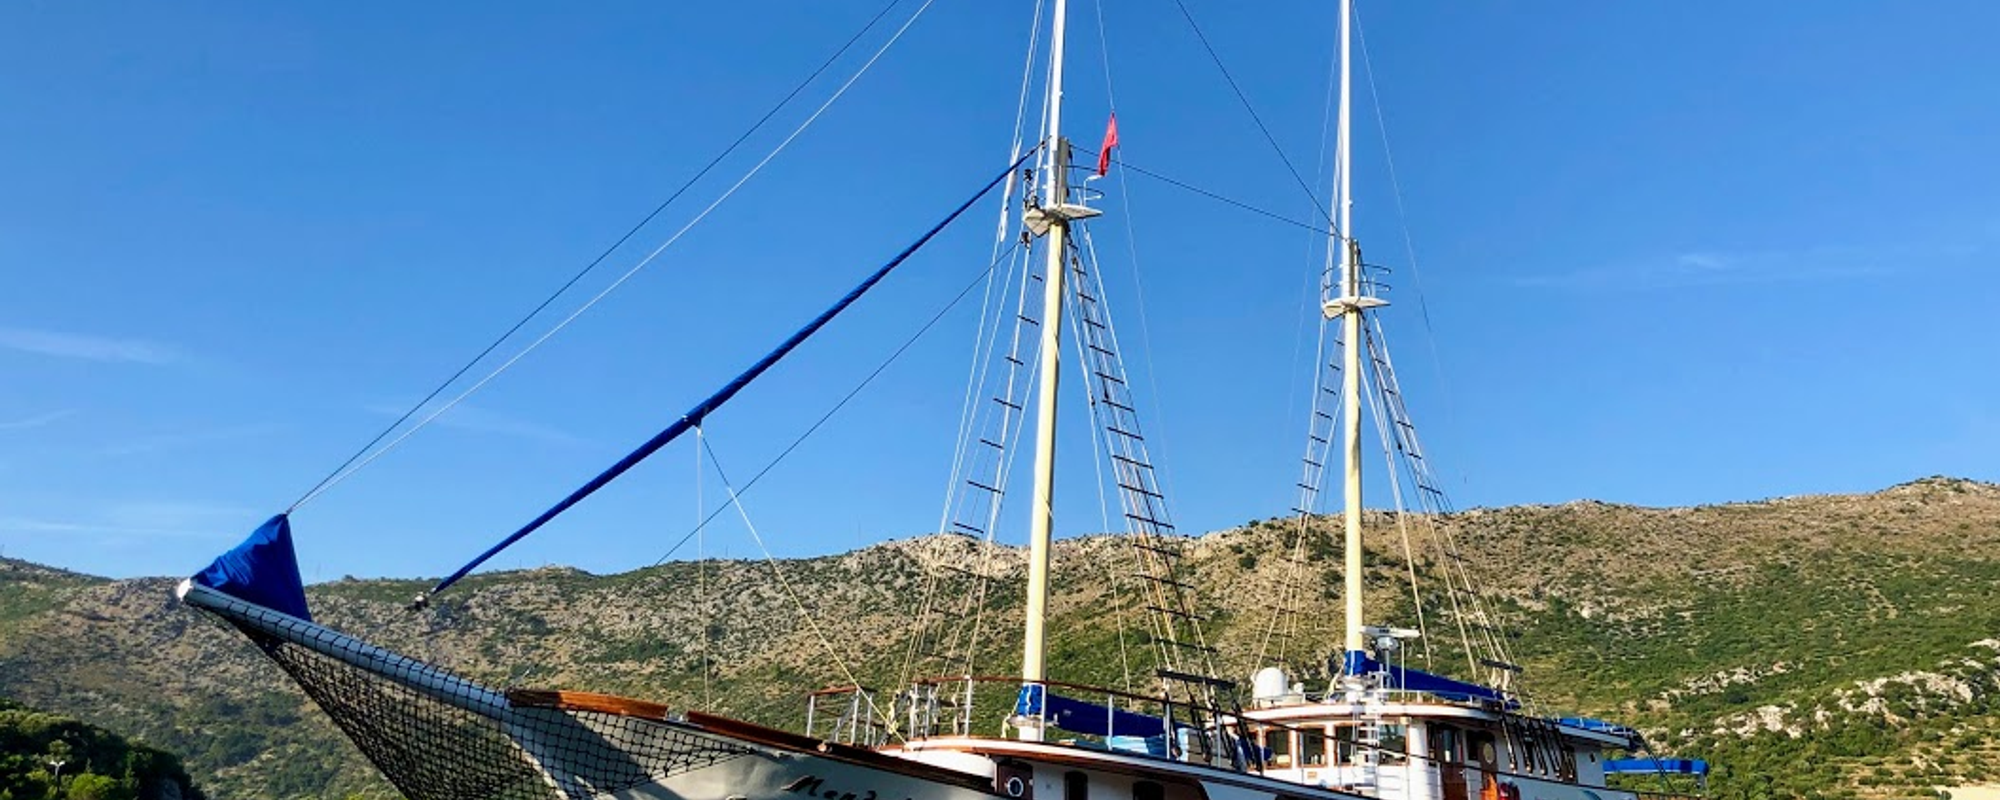 Une croisière pour visiter les côtes de Dalmatie : le MS Mendula 